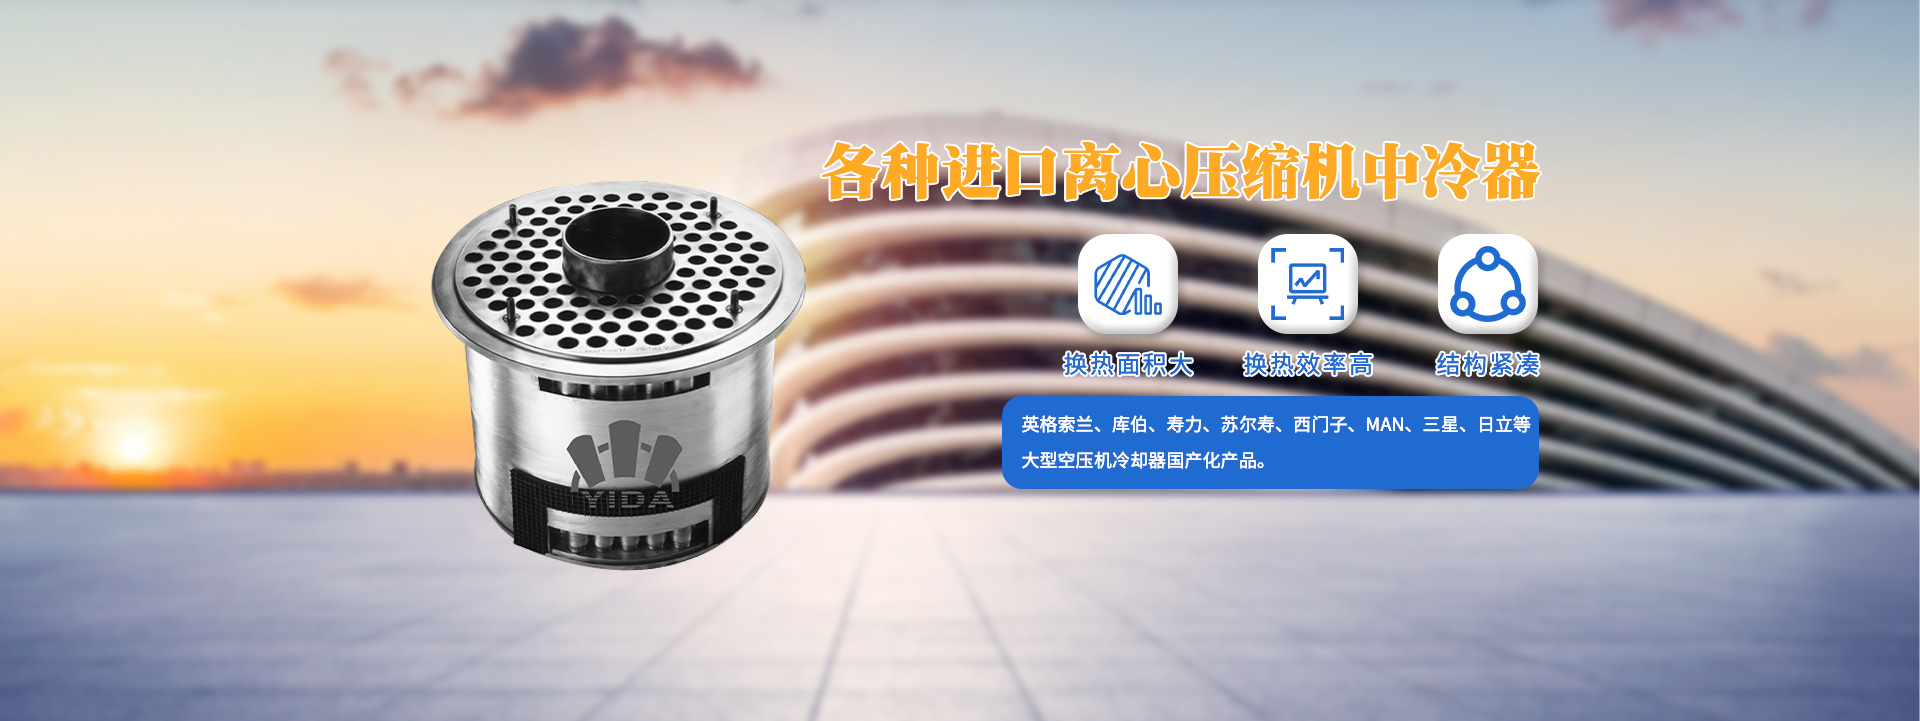 河南91视频链接下载换热设备有限公司